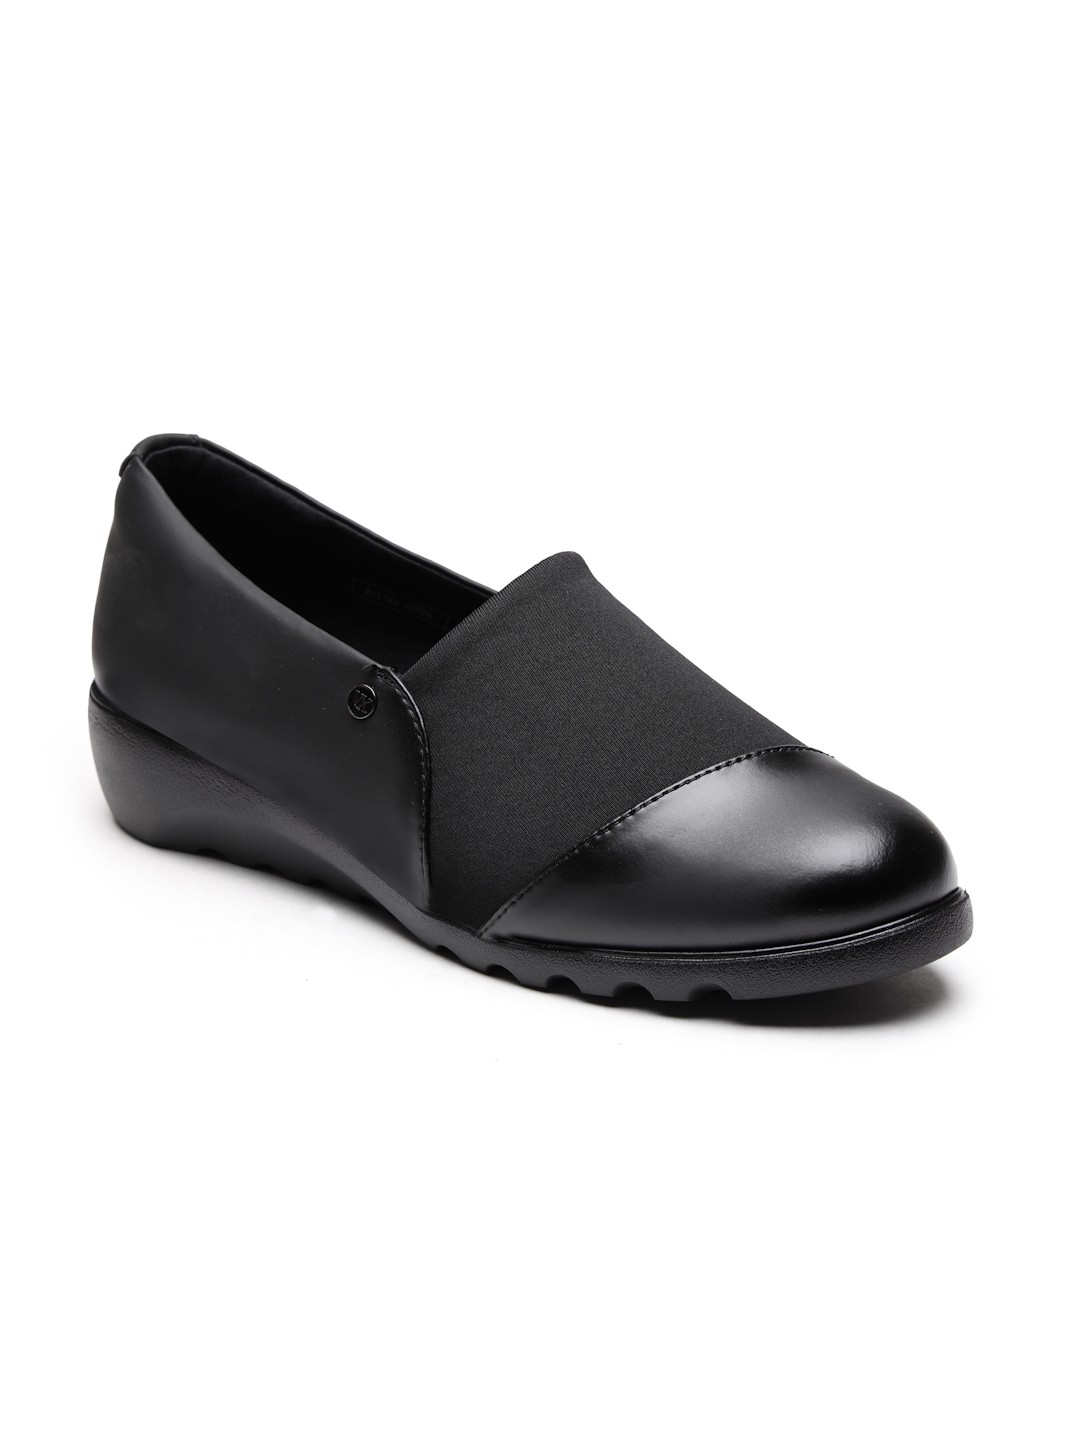 Buy Von Wellx Germany Comfort Women's Black Casual Shoes Ayla Online in Bhubaneswar